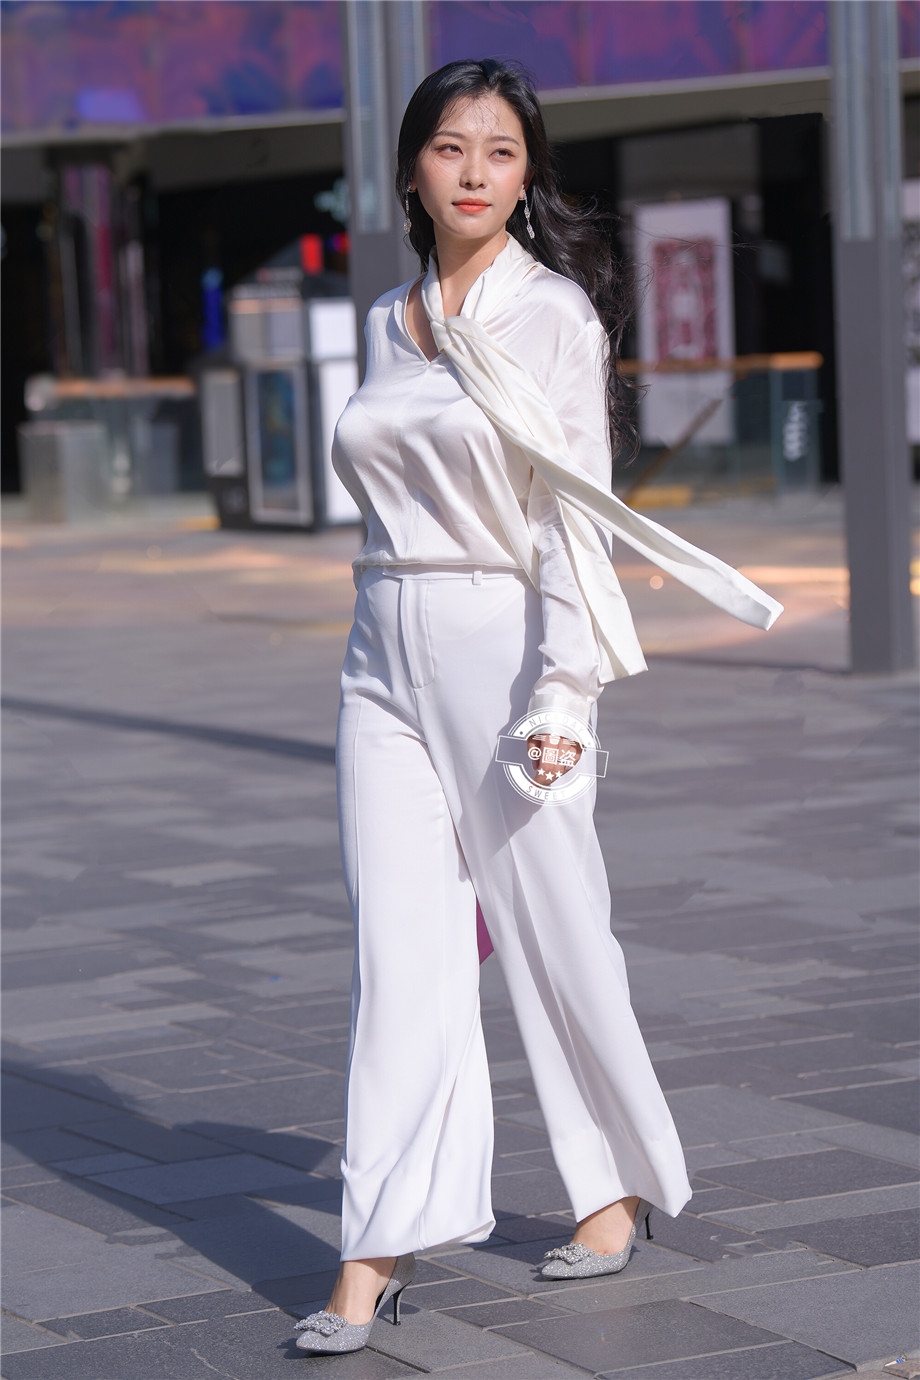 上海街头职业女性长发飘飘走路带风写真摄影